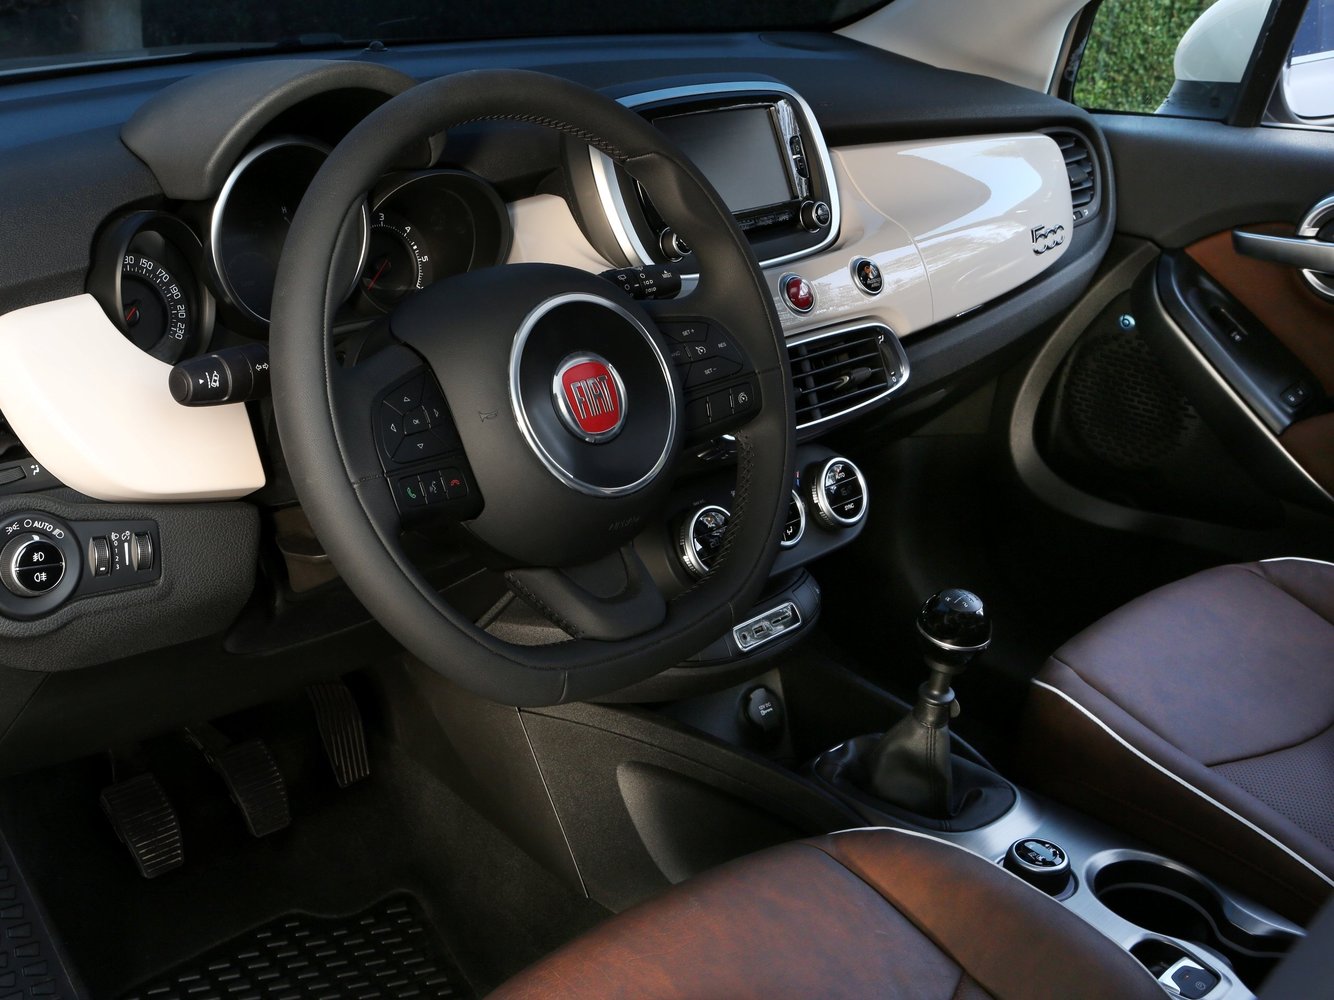 кроссовер Fiat 500X 2014 - 2016г выпуска модификация 1.6 MT (110 л.с.)